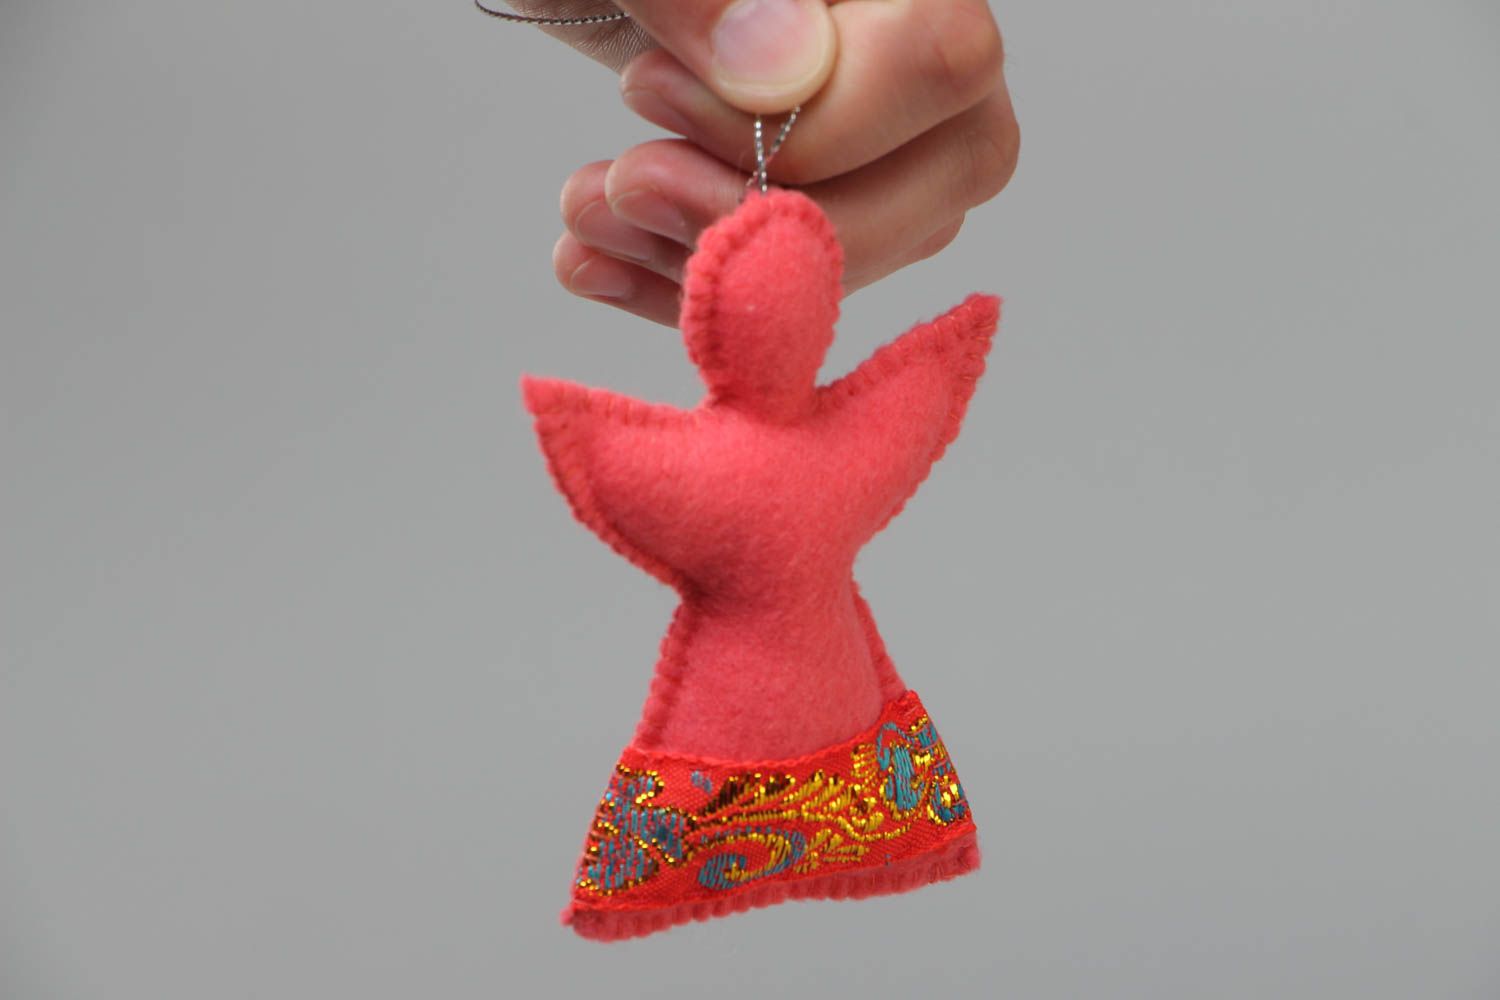 Rosa handmade Deko Anhänger aus Filz in Form vom Engel wunderschön foto 5